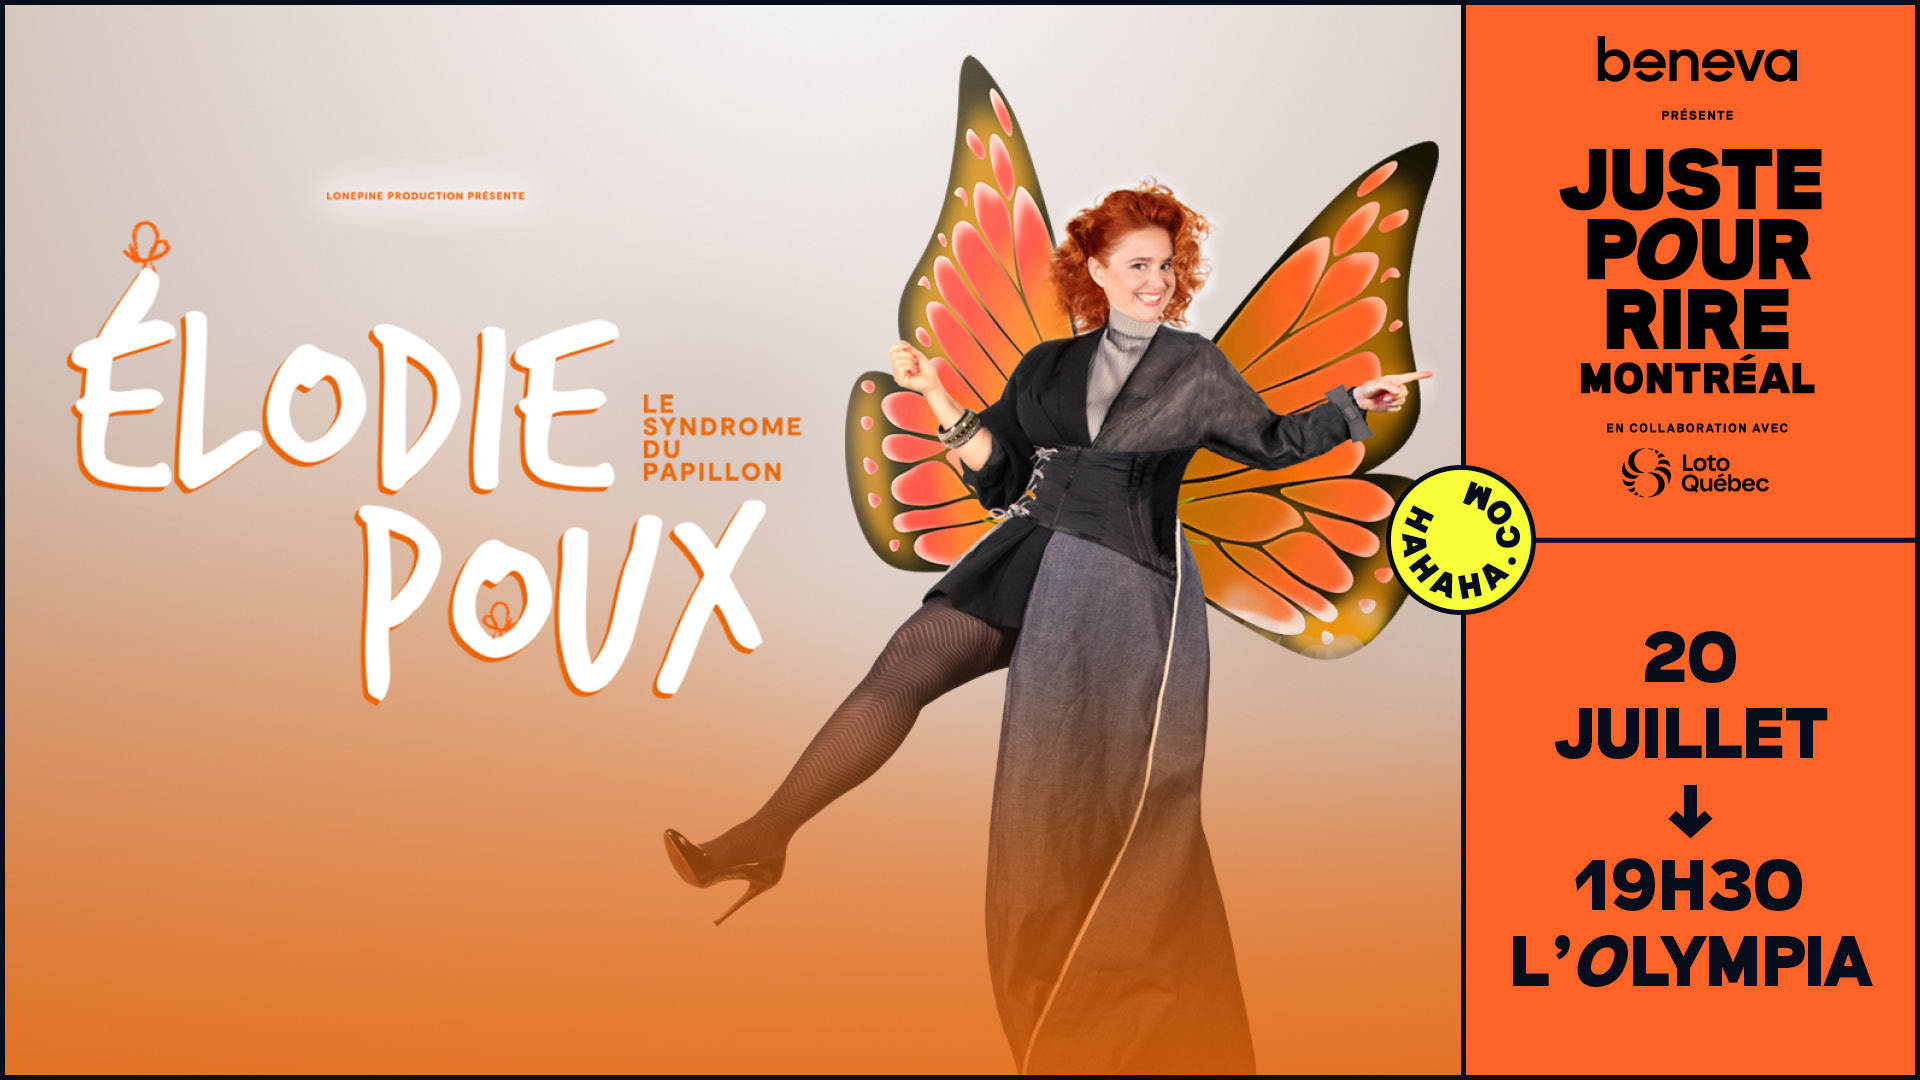 Élodie Poux – Le Syndrome du papillon